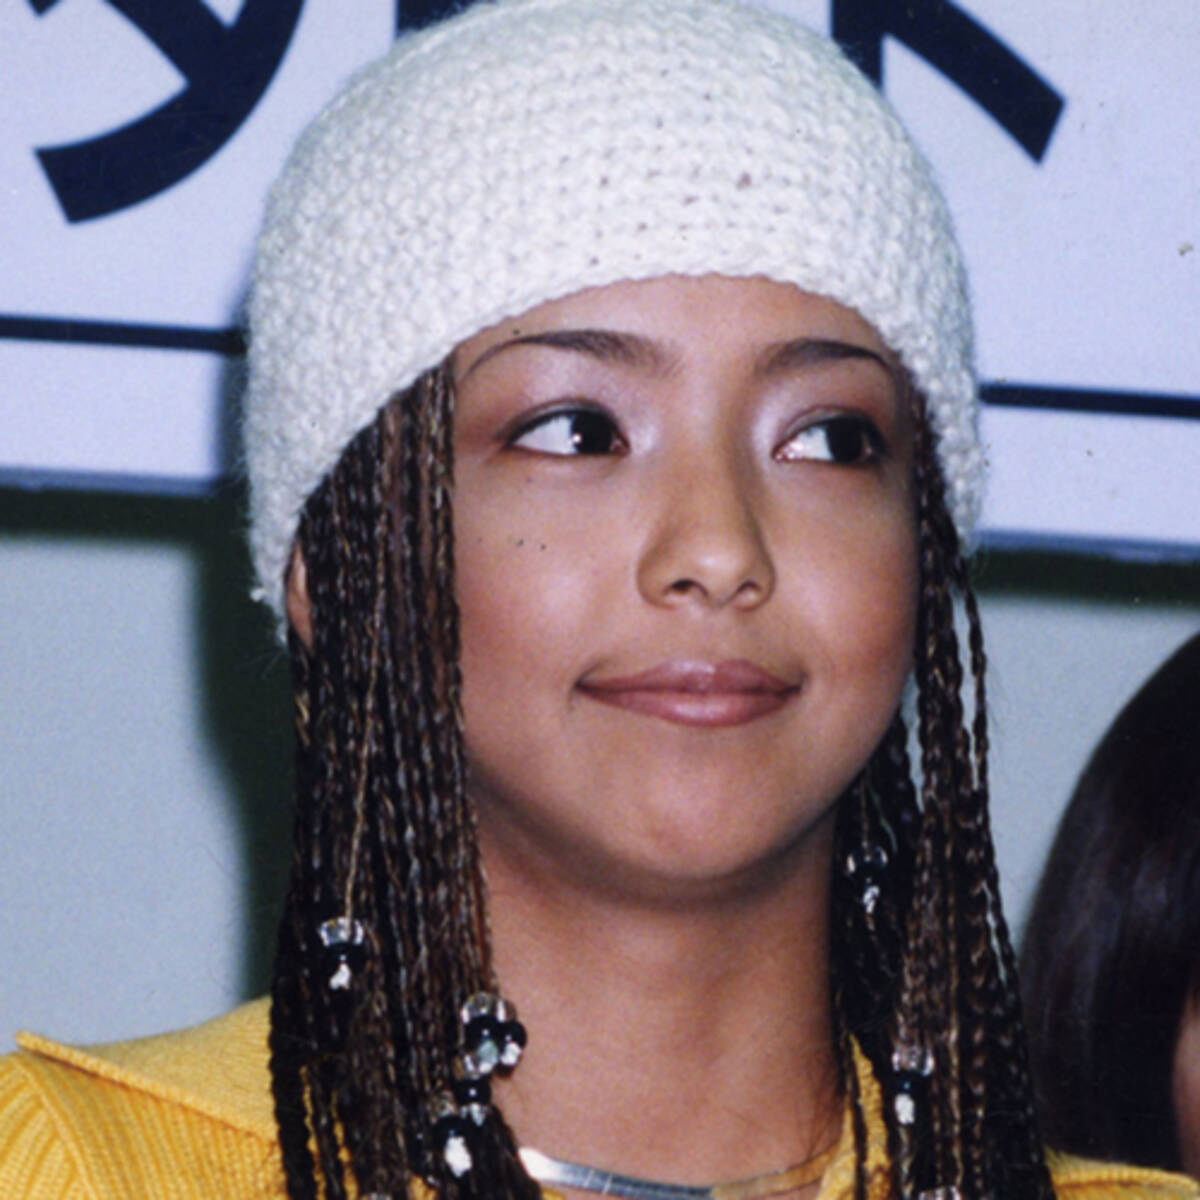 たまごっち の流行も巻き起こしていた安室奈美恵 17年10月9日 エキサイトニュース